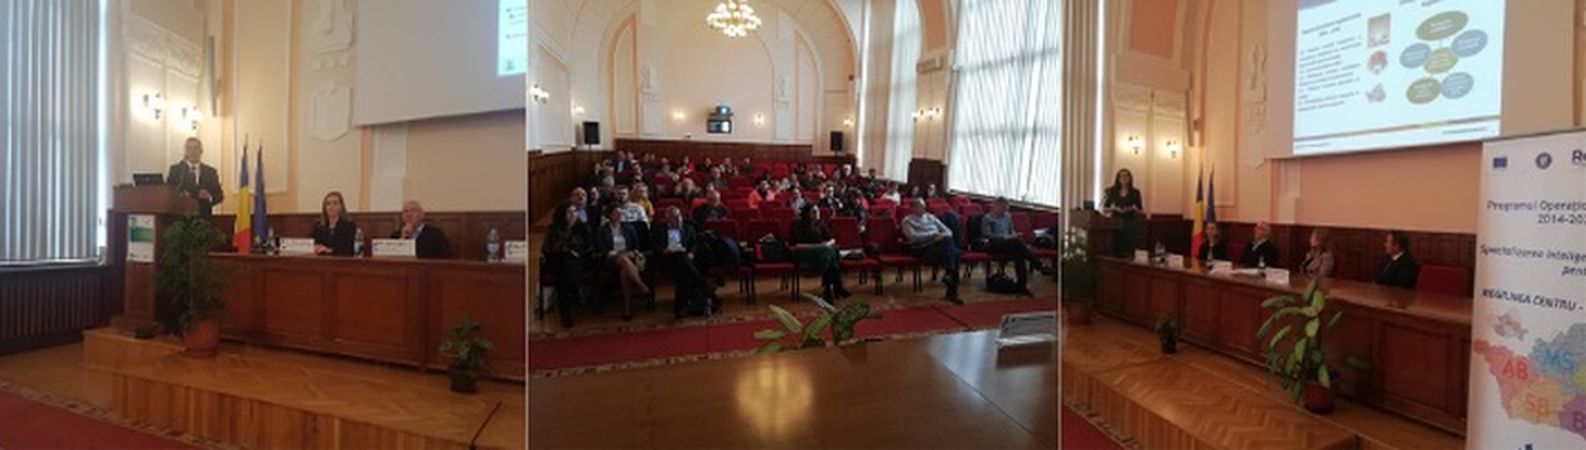 1ST LSG MEETING in Centru Region, Romania